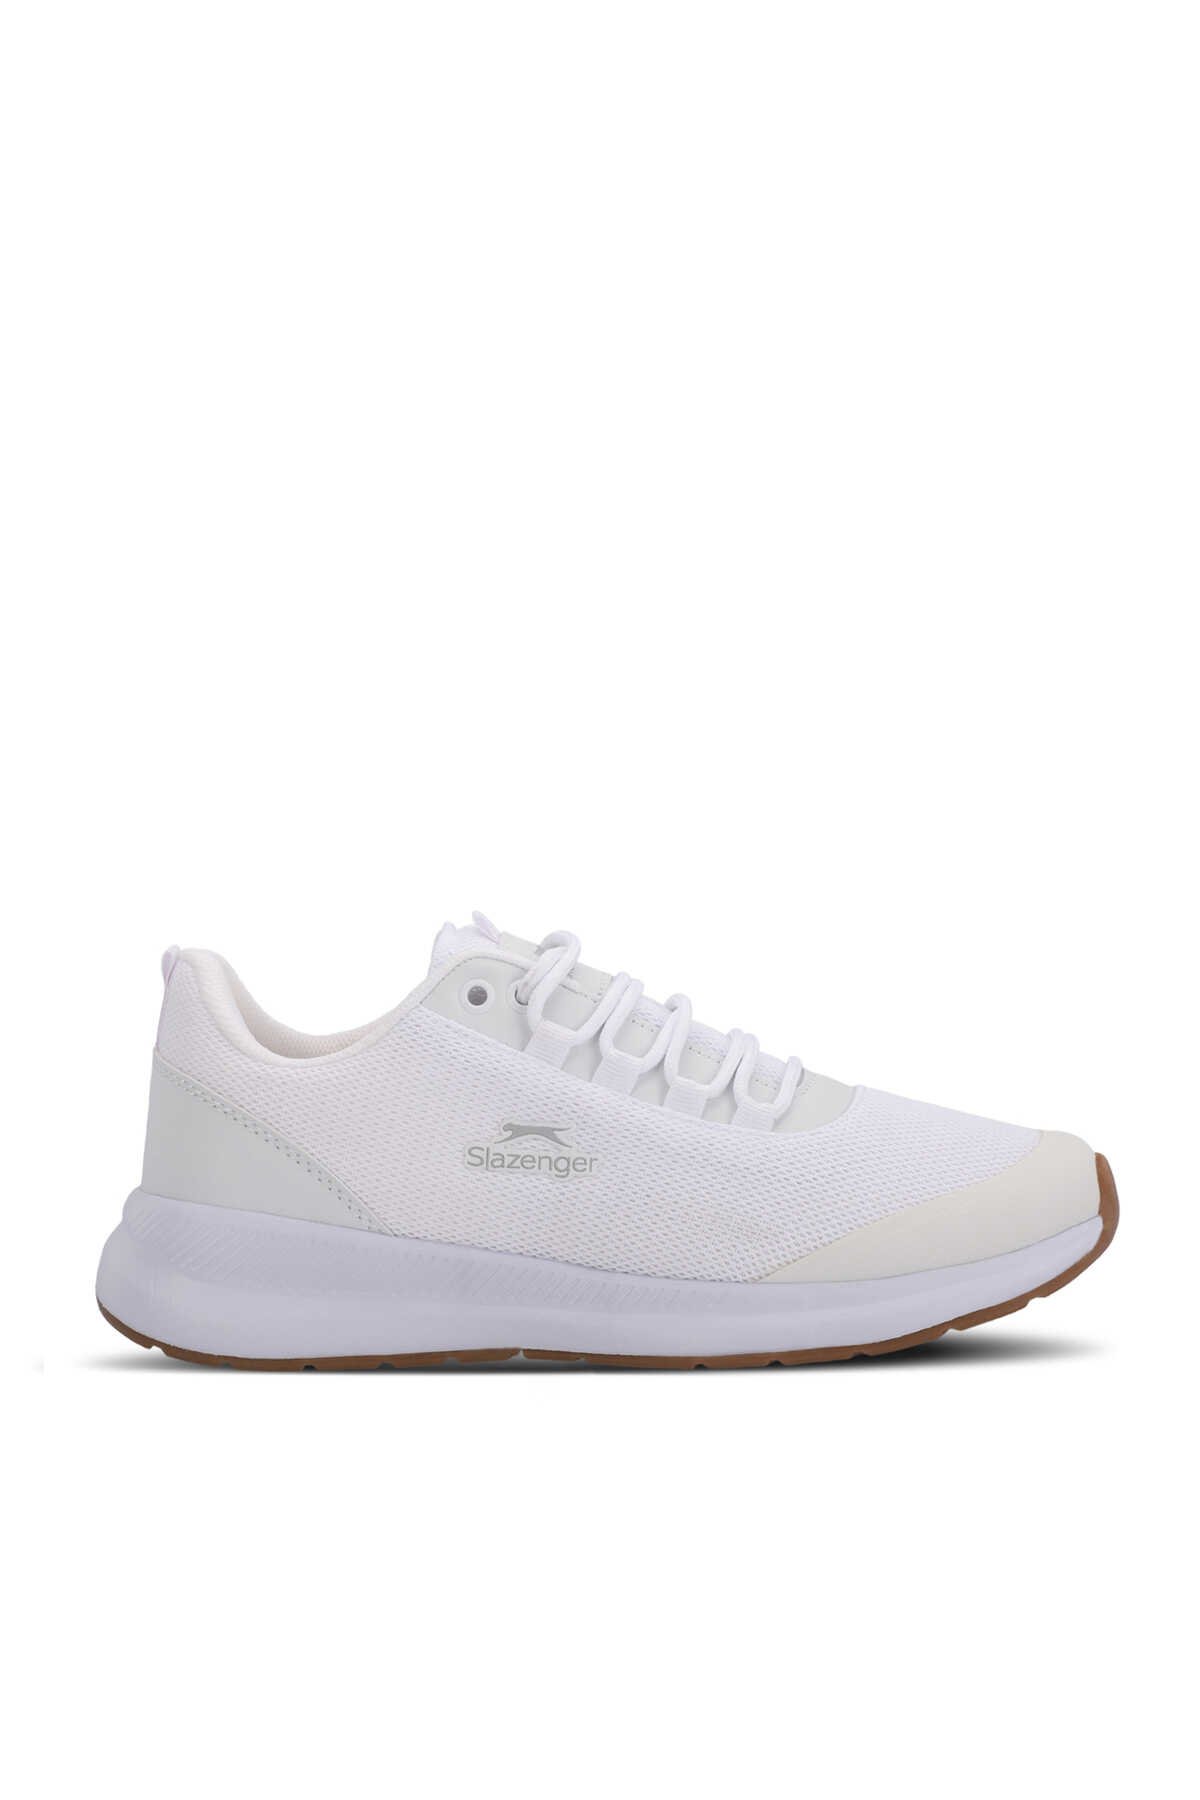 Slazenger - Slazenger ZITA Kadın Sneaker Ayakkabı Beyaz